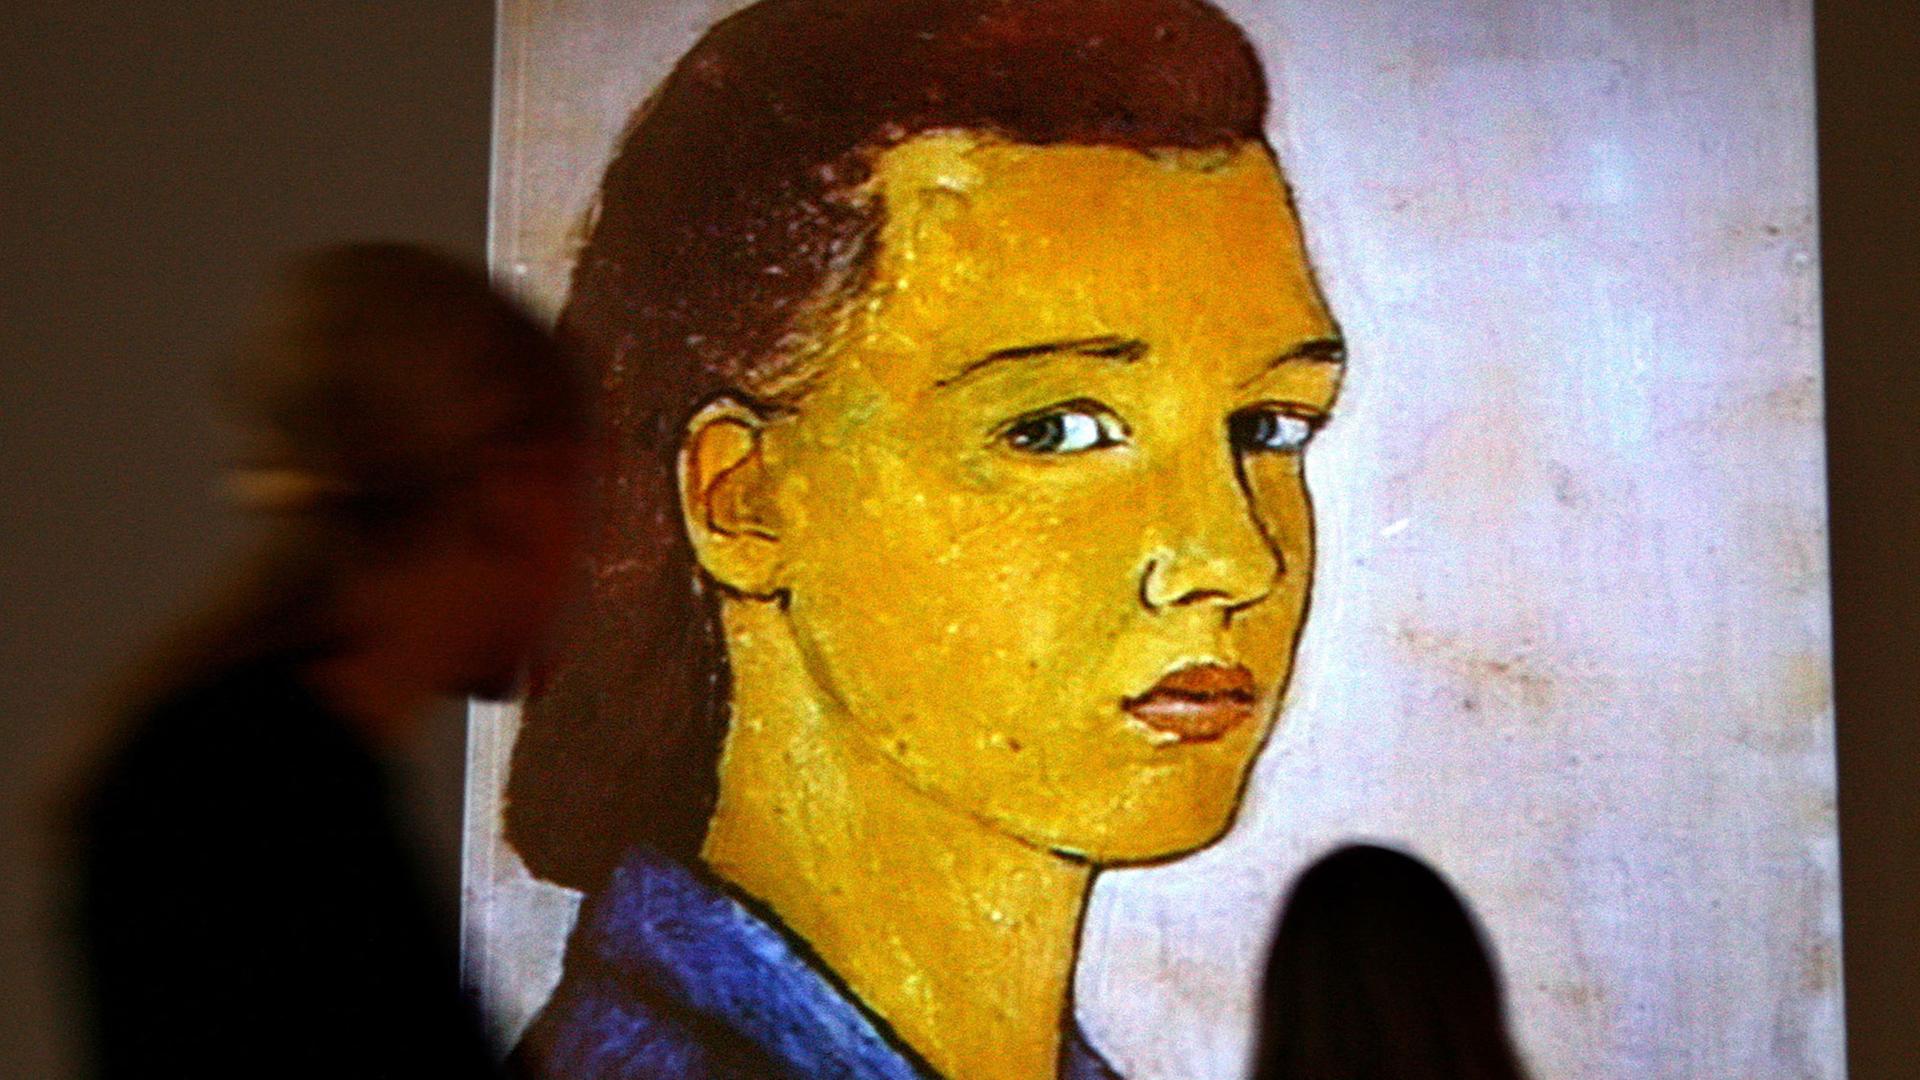 Besucher betrachten im Jüdischen Museum in Berlin das Selbstporträt der jüdischen Künstlerin Charlotte Salomon aus dem Jahr 1940.